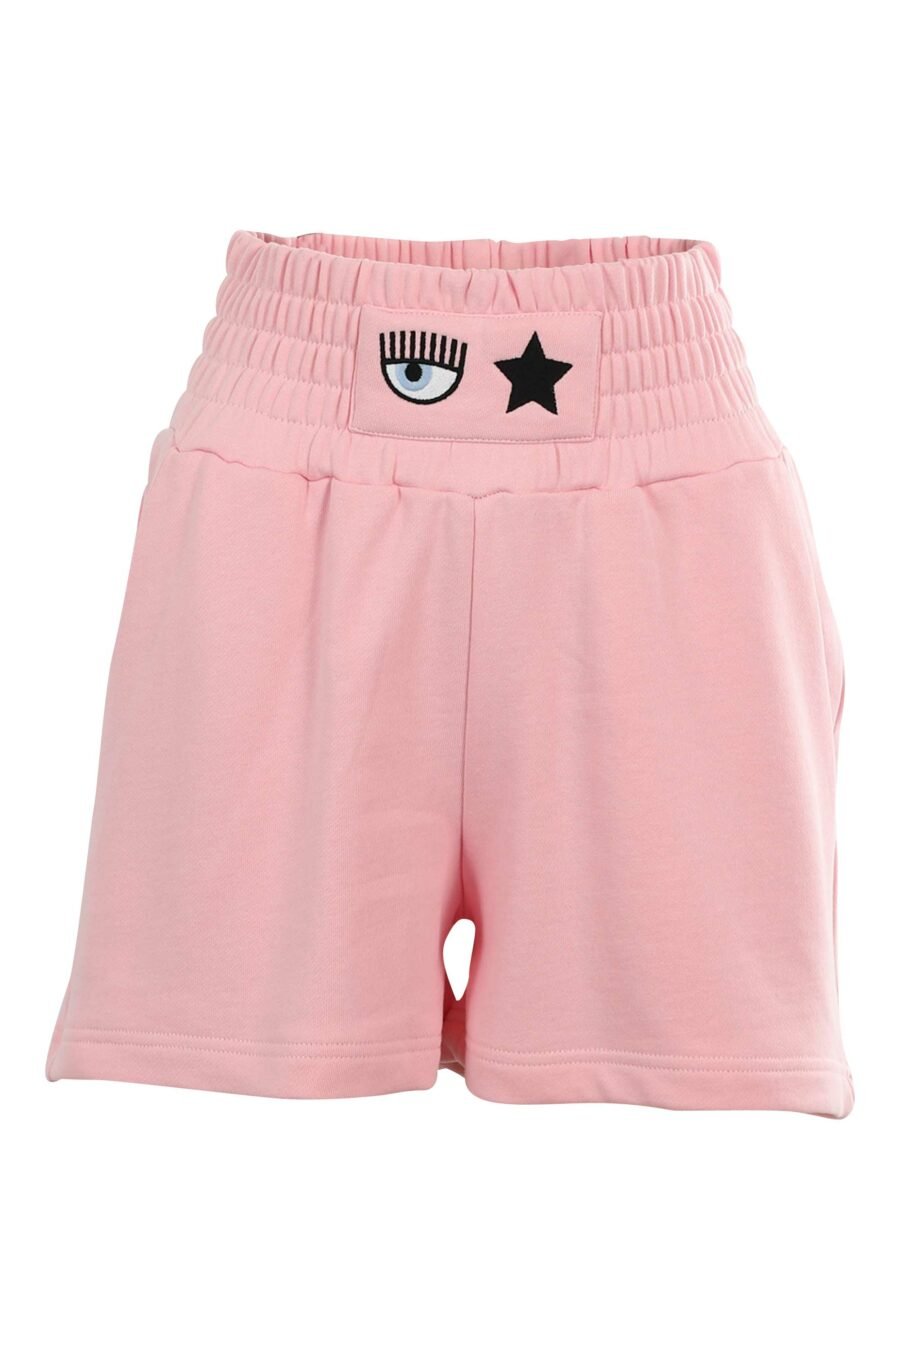 Pantalón de chándal rosa corto con logo ojo y estrella - 8052672415530